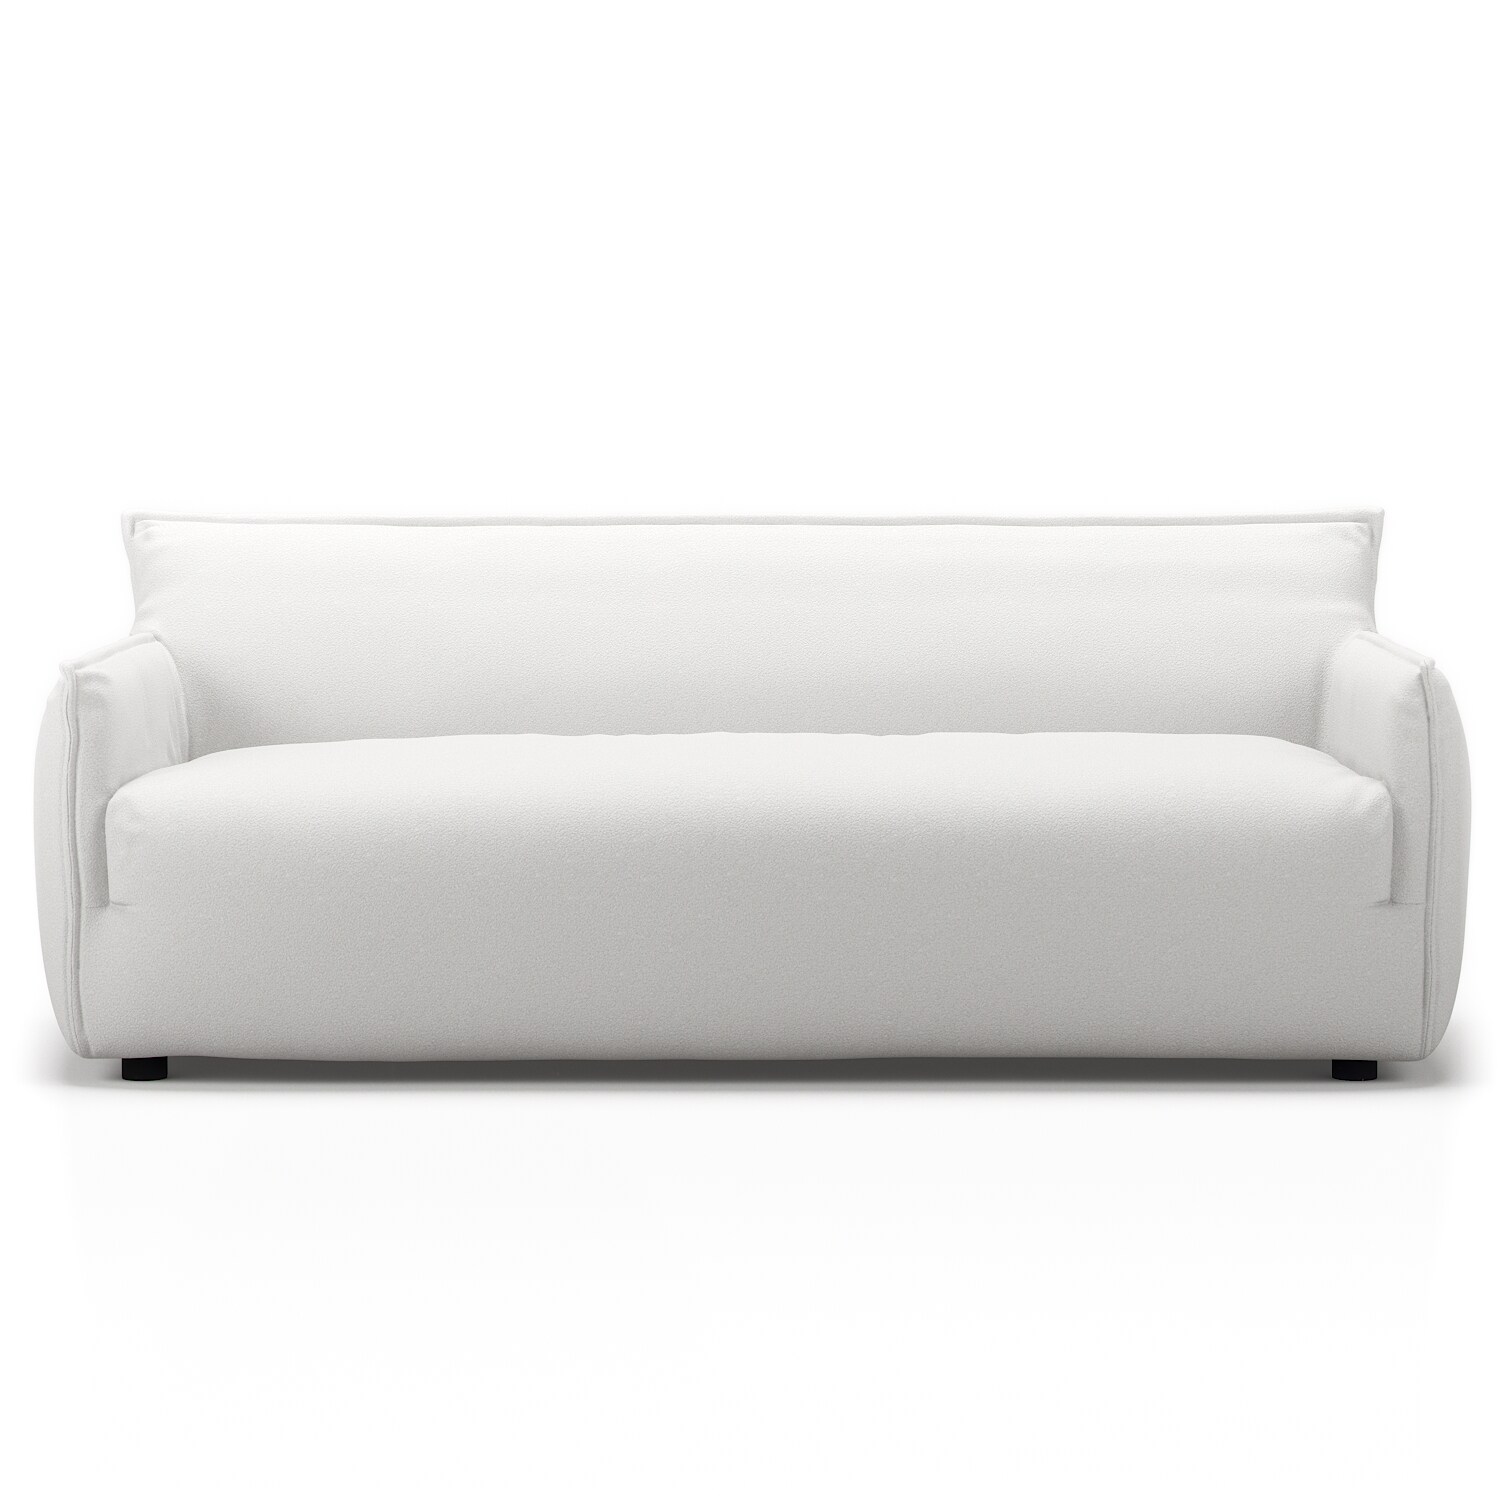 Le Petite 3-Sitzer-Sofa, Lush White @ Decotique 